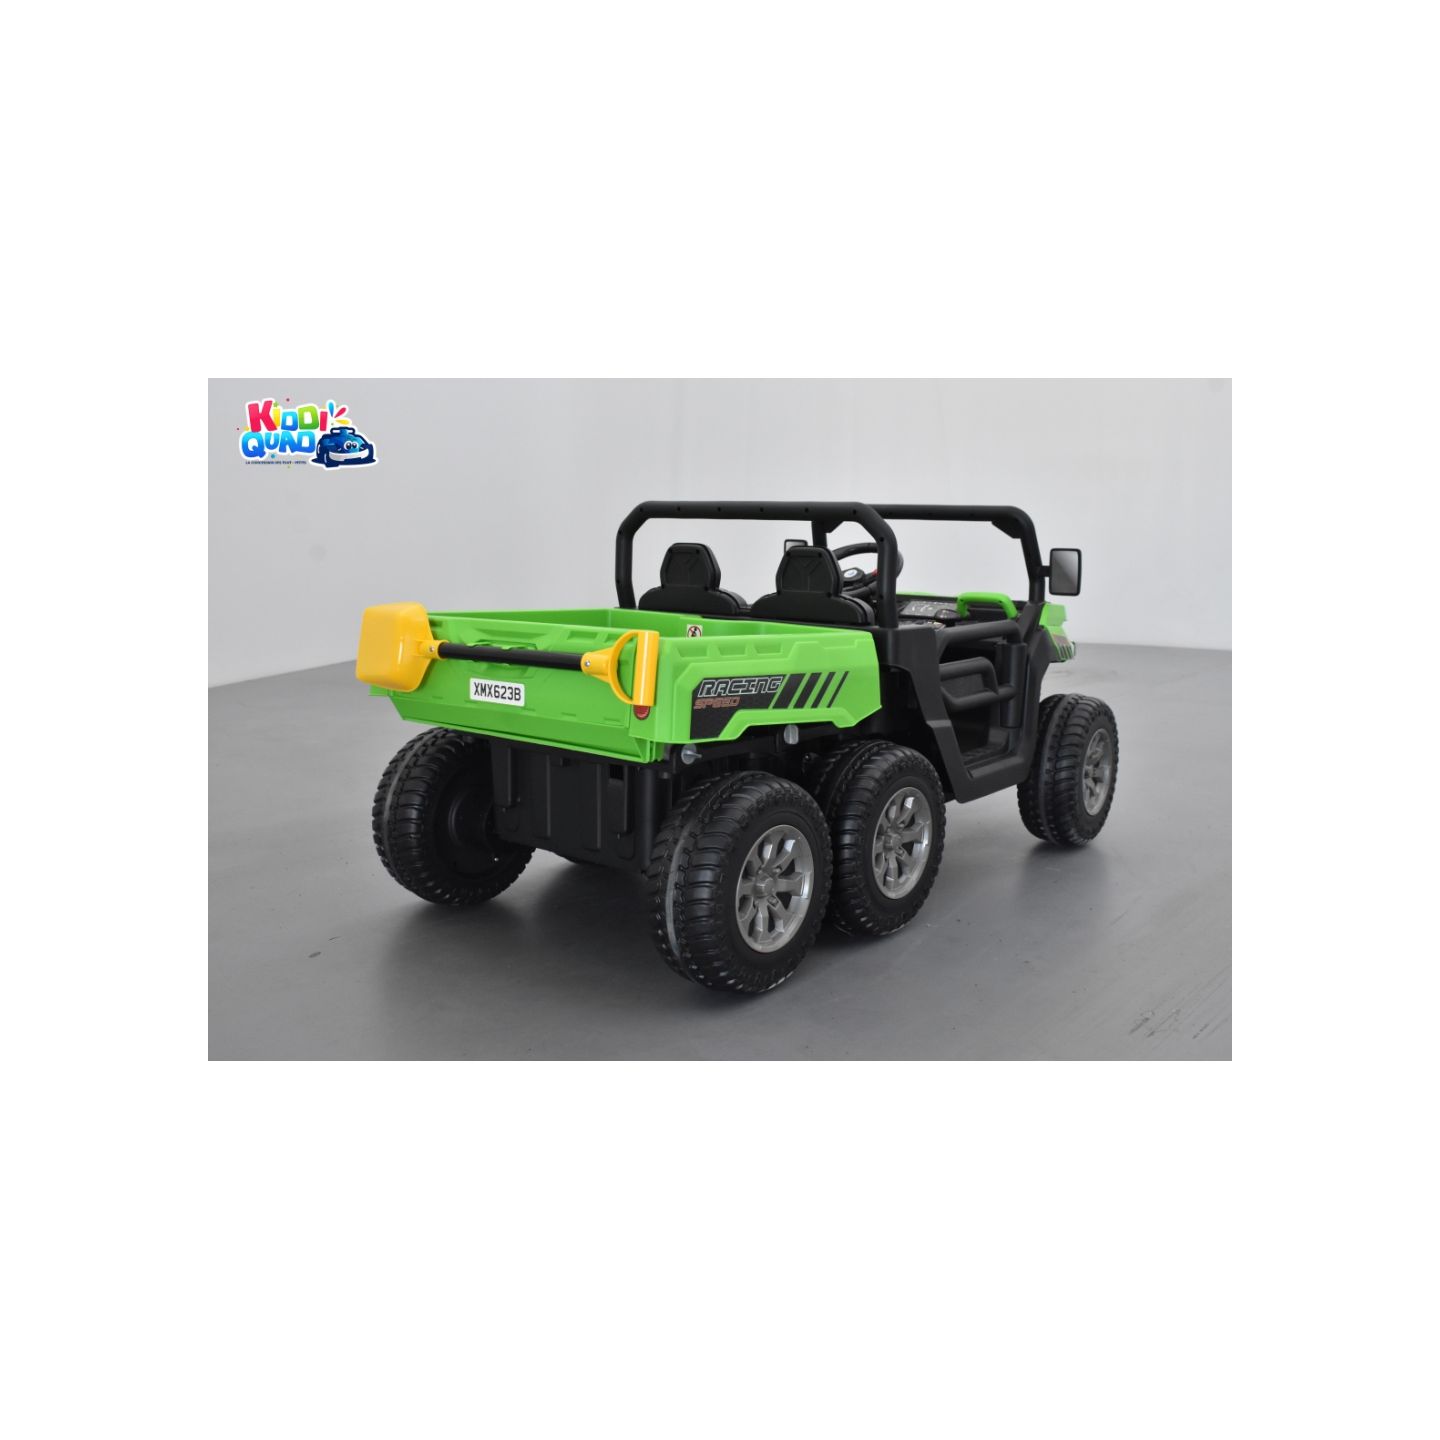 ATV 6X6 vert avec benne basculante, tracteur électrique enfant, 24Volts - 7AH, 4 moteurs